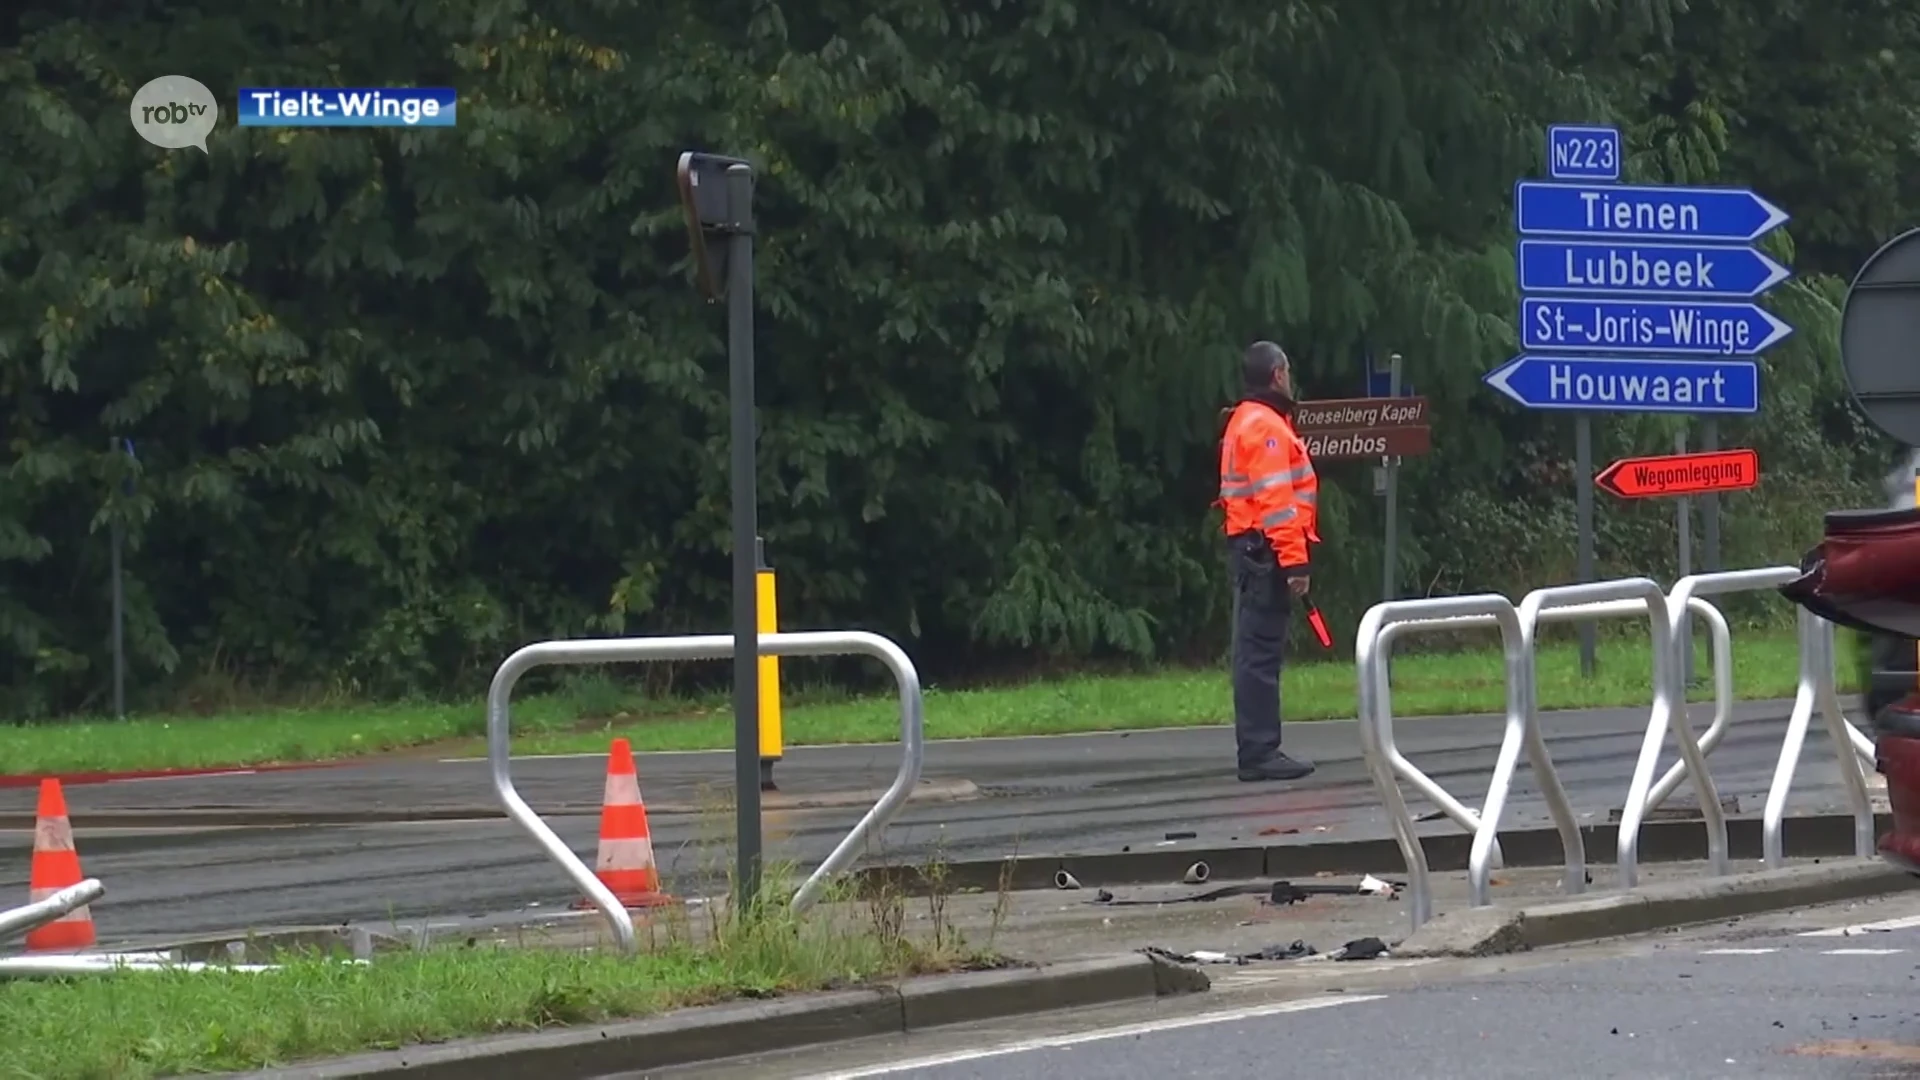 Verkeerssituatie op kruispunt van Roeselberg in Tielt-Winge wordt herbekeken